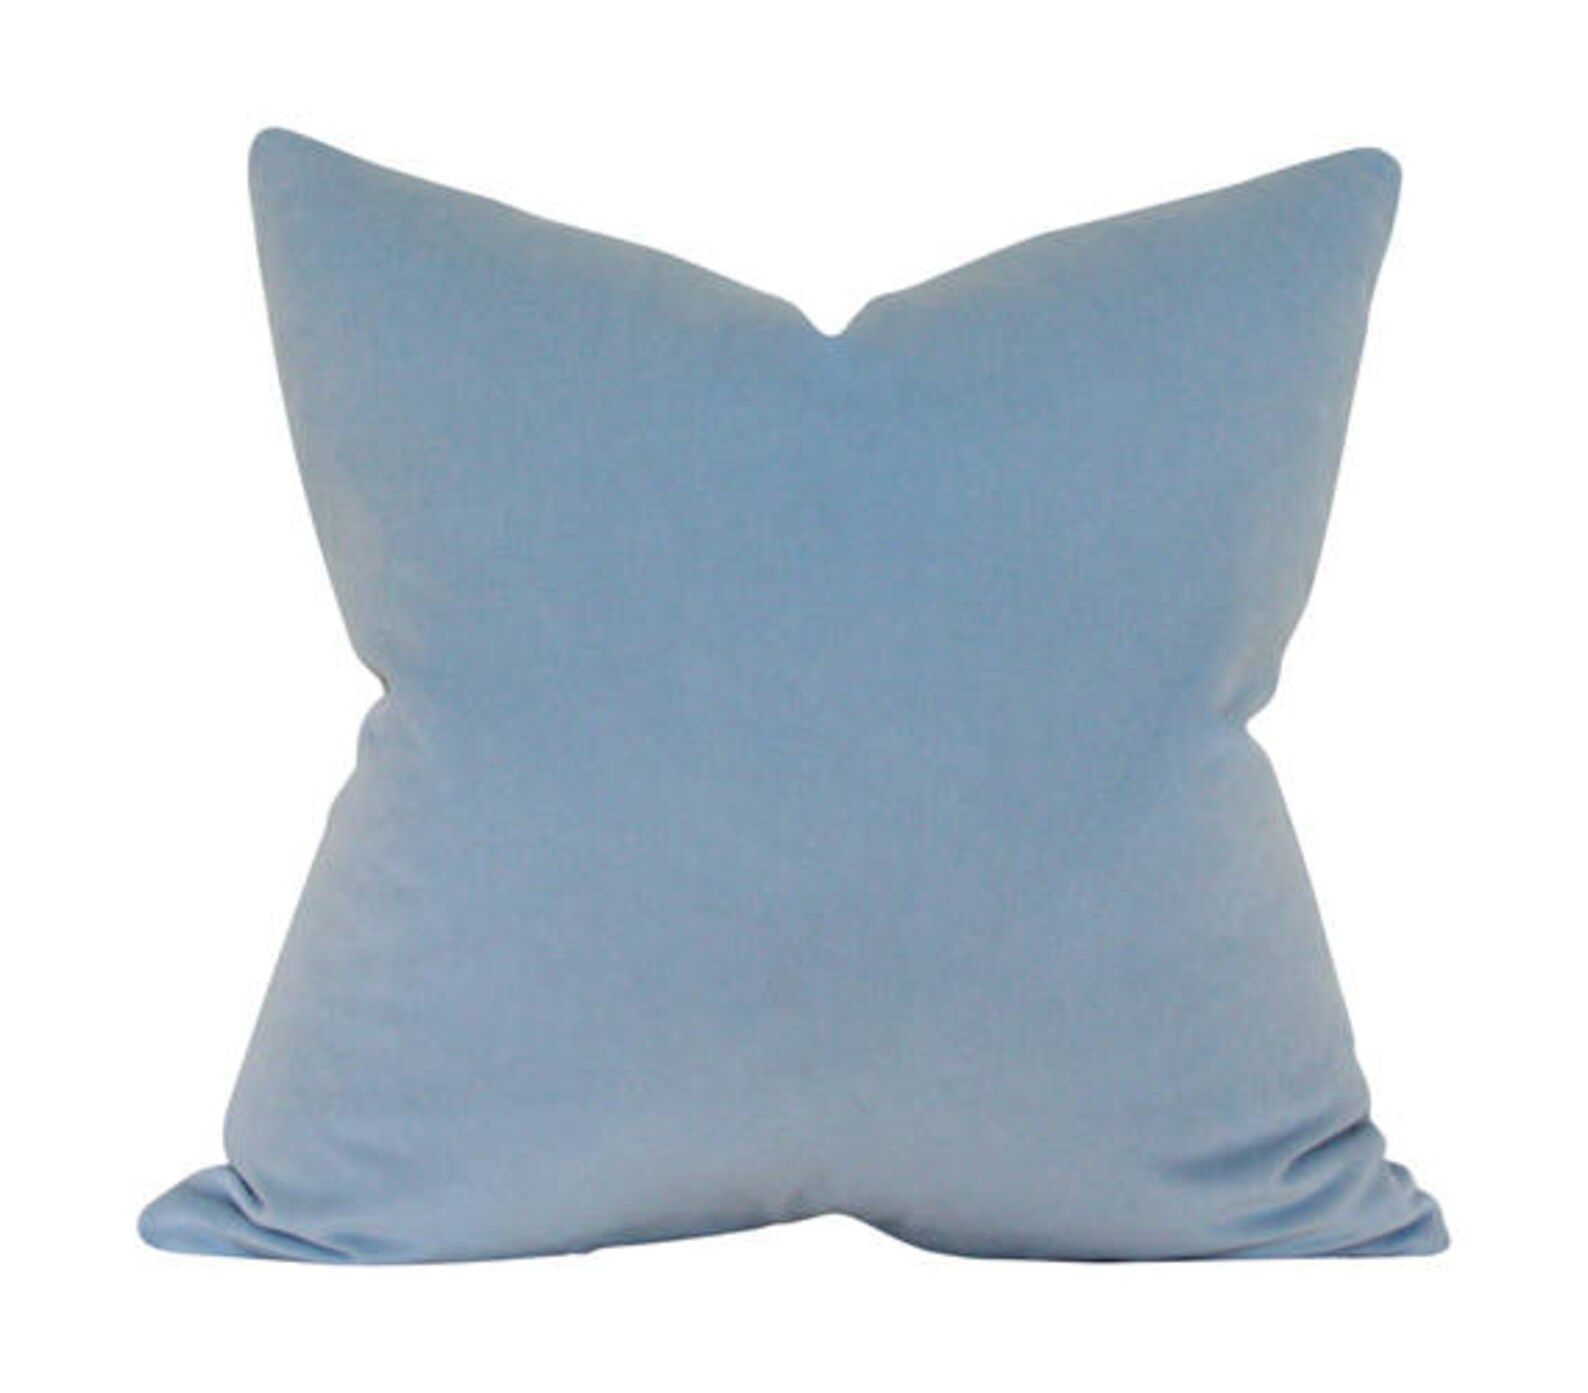 Powder Blue Velvet Designer Pillow Cover - Custom Made-to-Order - Luxury High End Cushion | Etsy (US)